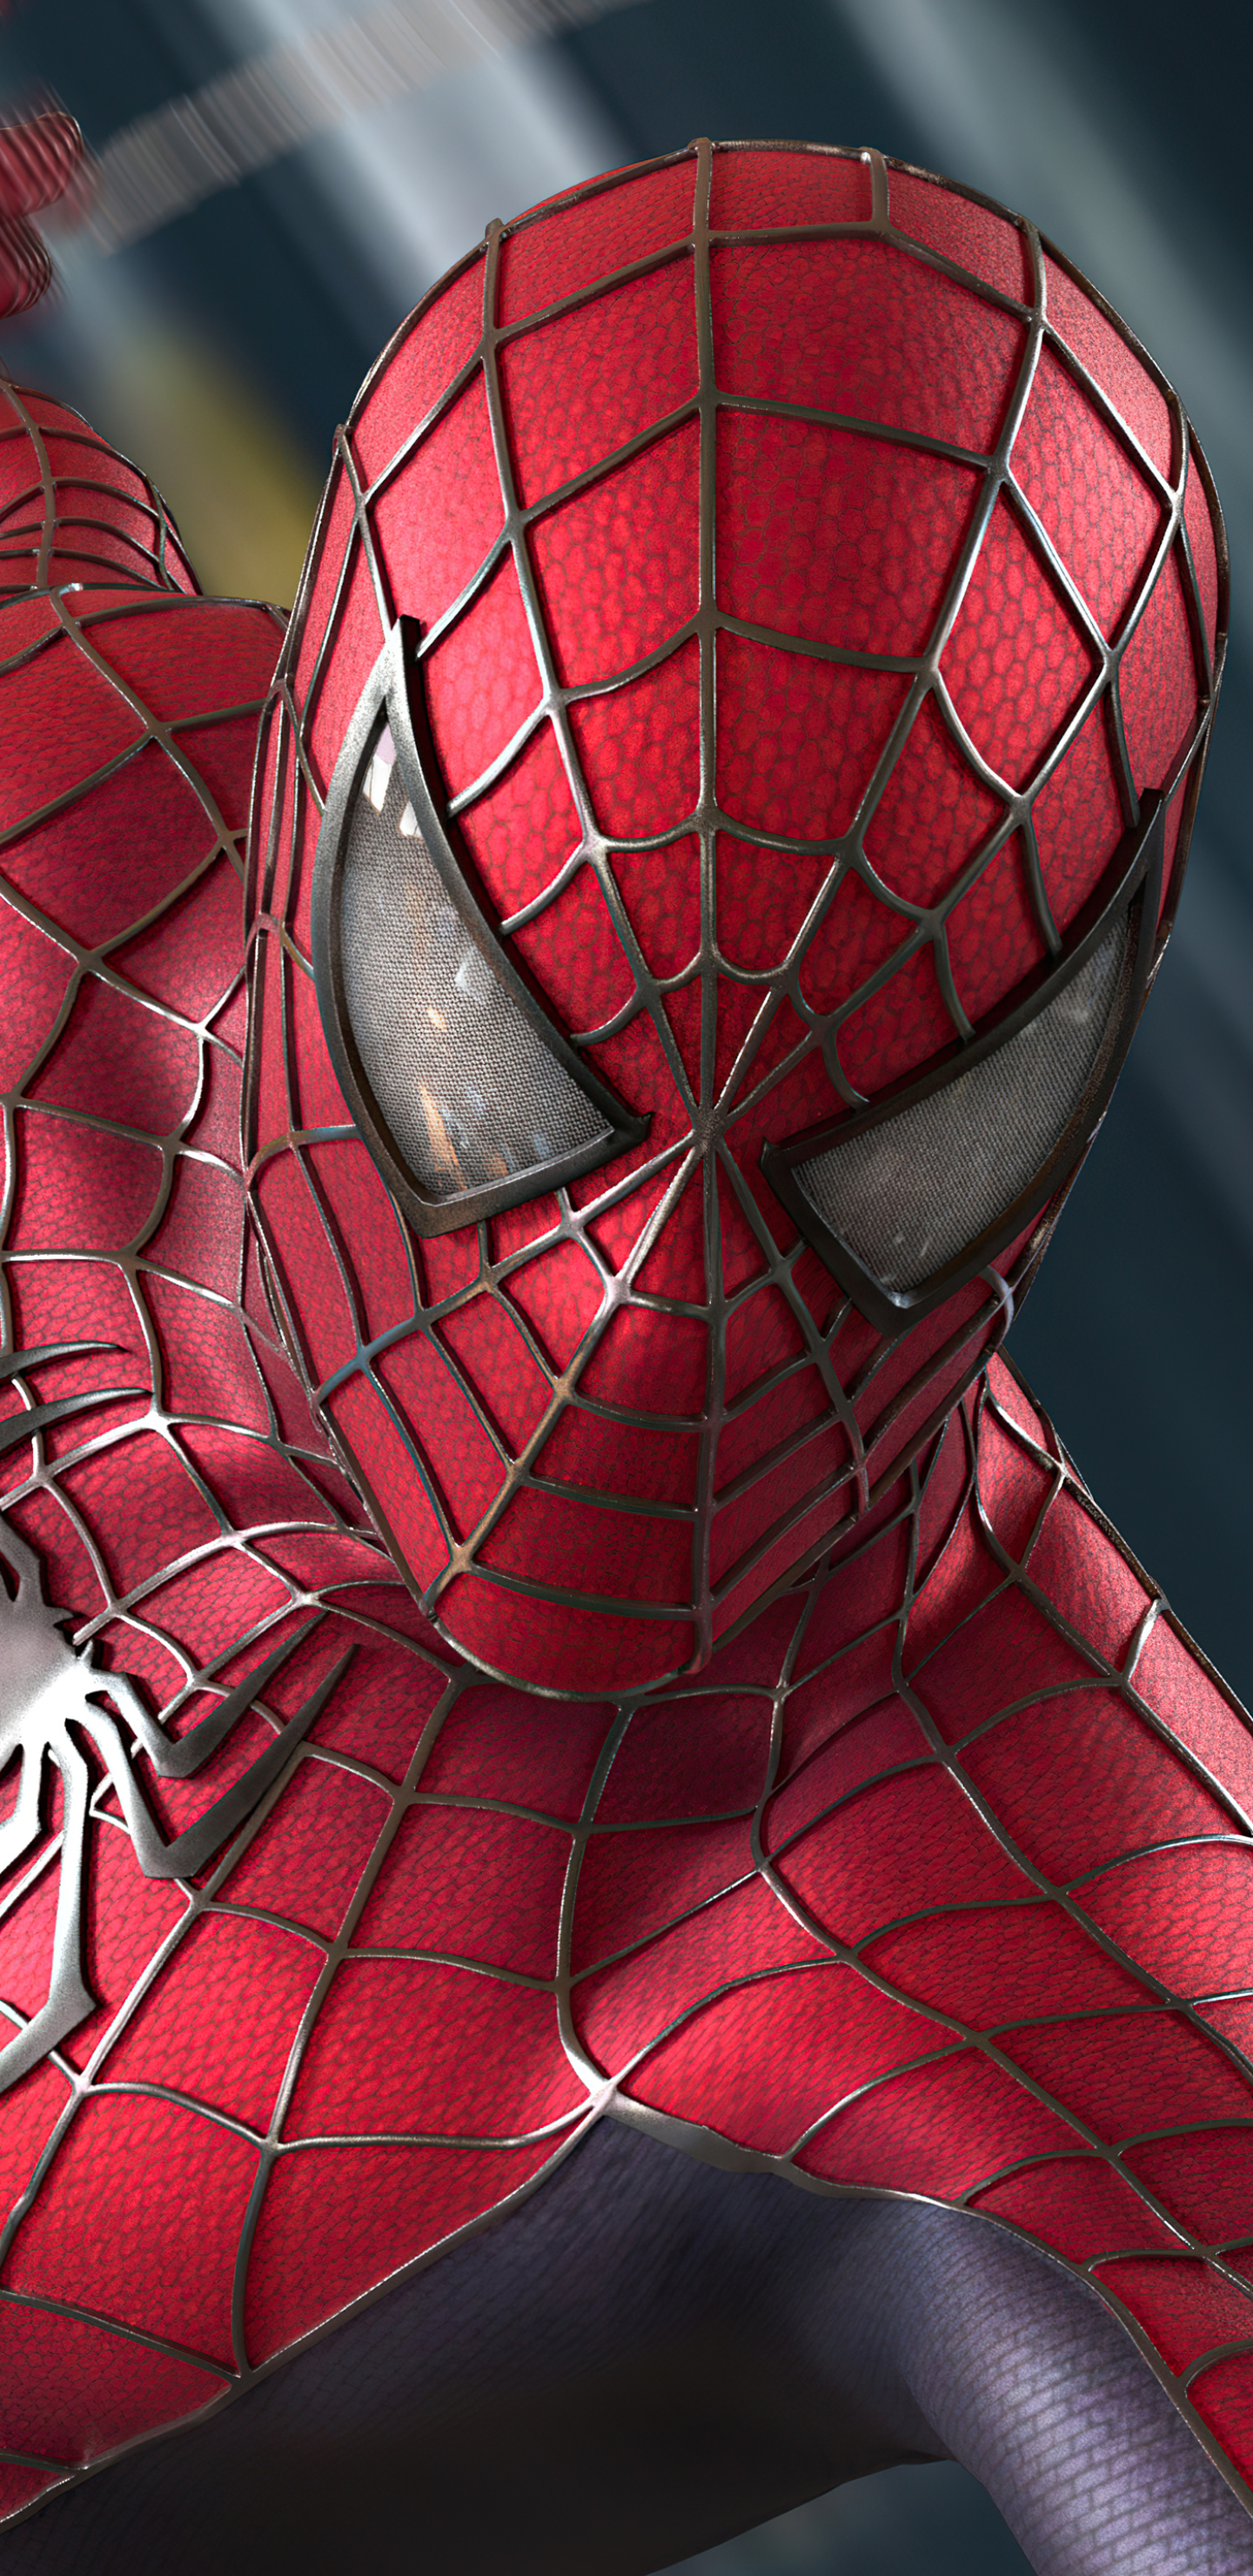 Descarga gratuita de fondo de pantalla para móvil de Películas, Spider Man 2, Hombre Araña, Spider Man.